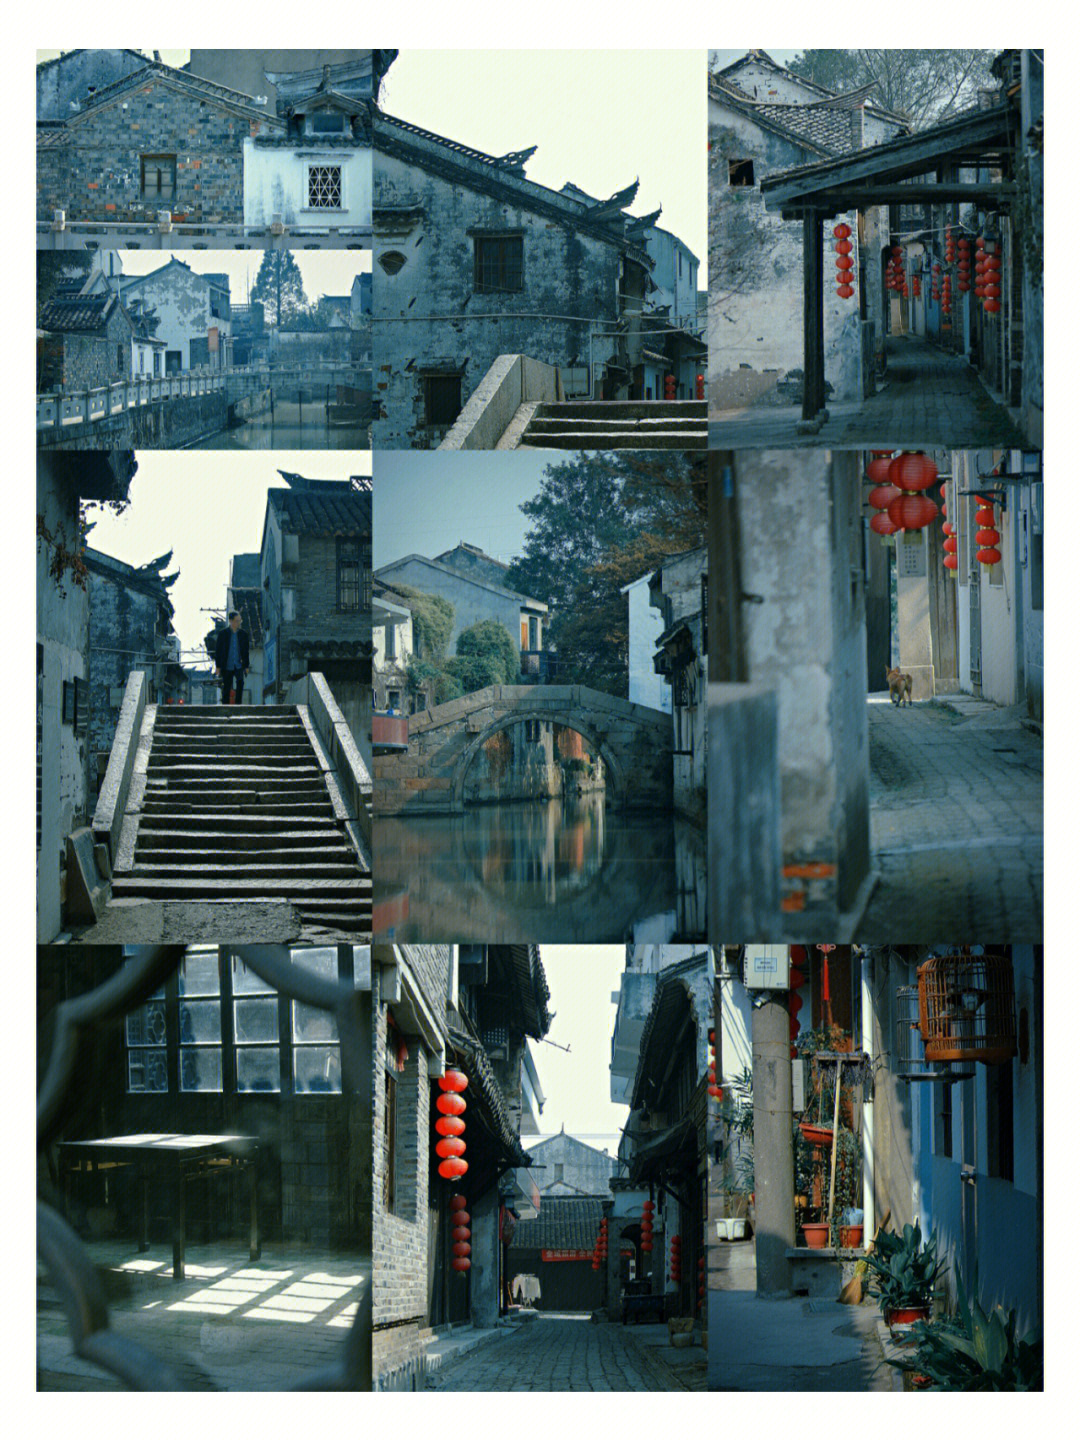 杨桥古镇小吃街图片